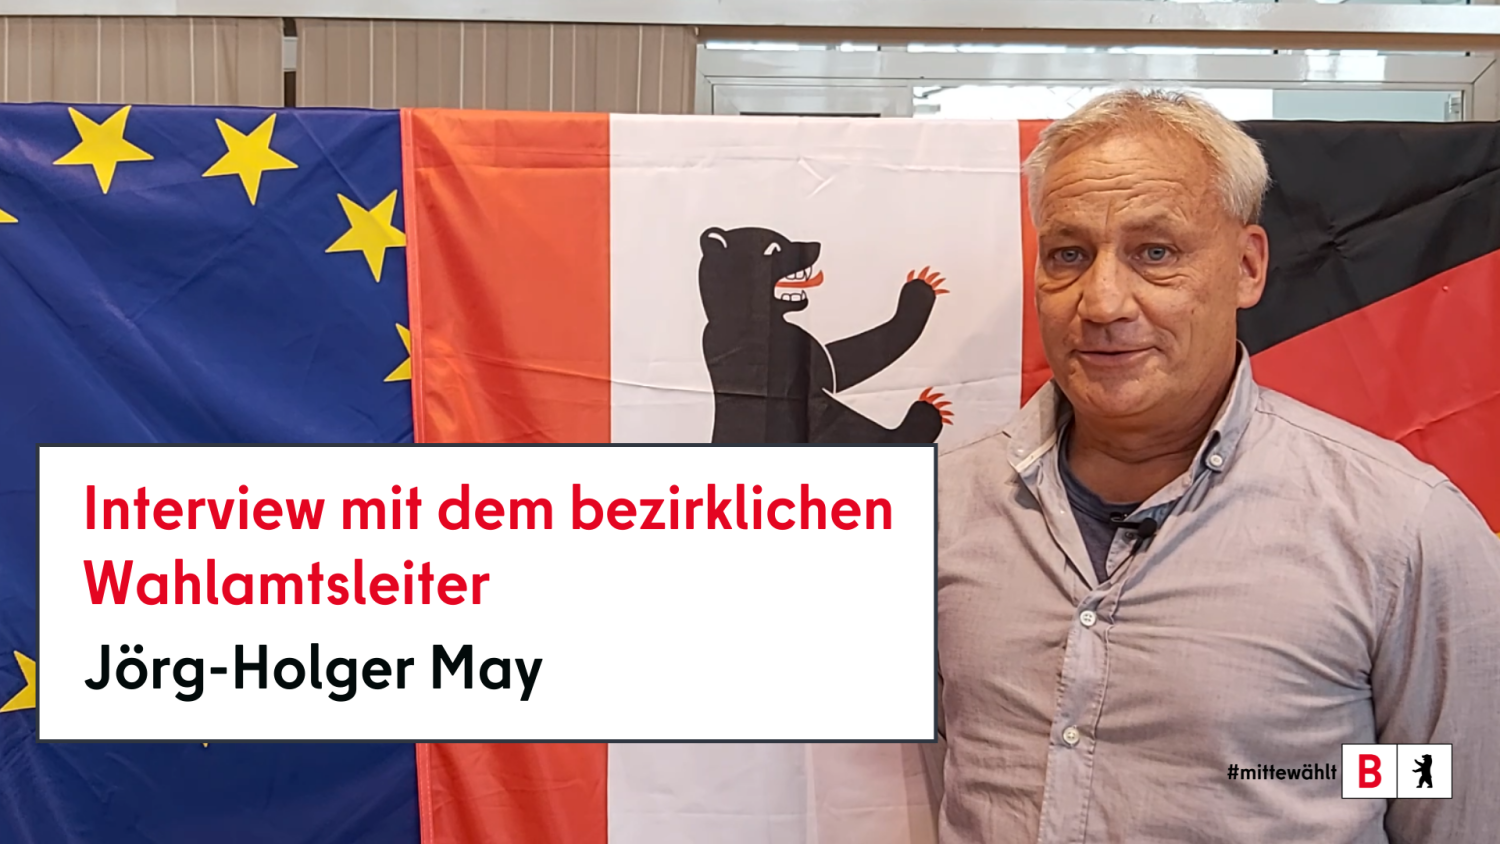 Foto vom Wahlamtsleiter Herr Jörg-Holger May zum Interview im Wahlamt